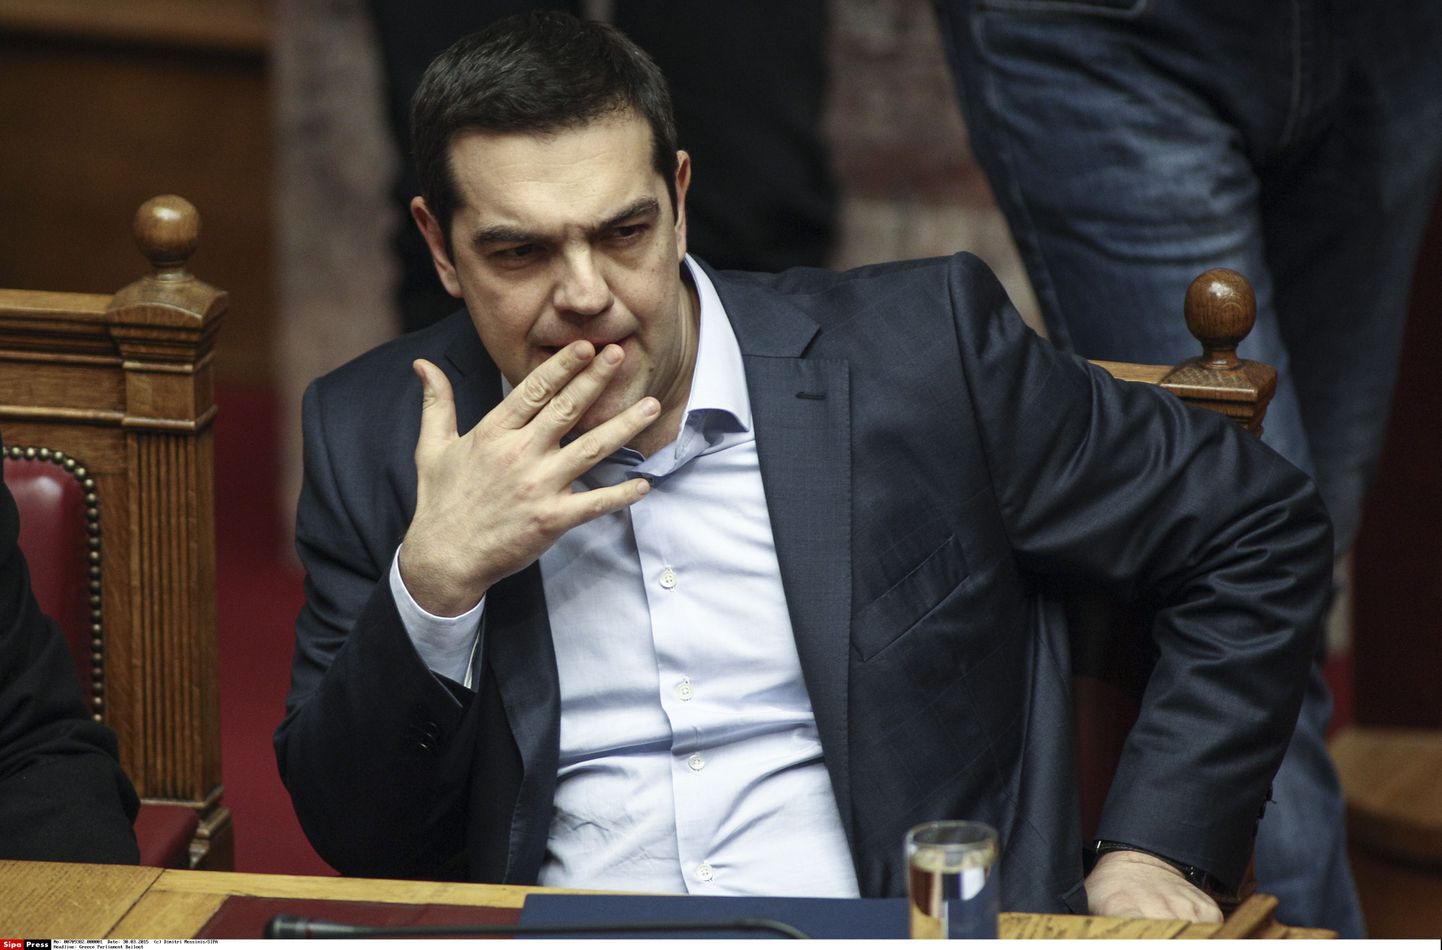 Kreeka peaminister Alexis Tsipras üritab Moskvalt Kreekale erikohtlemist välja rääkida.